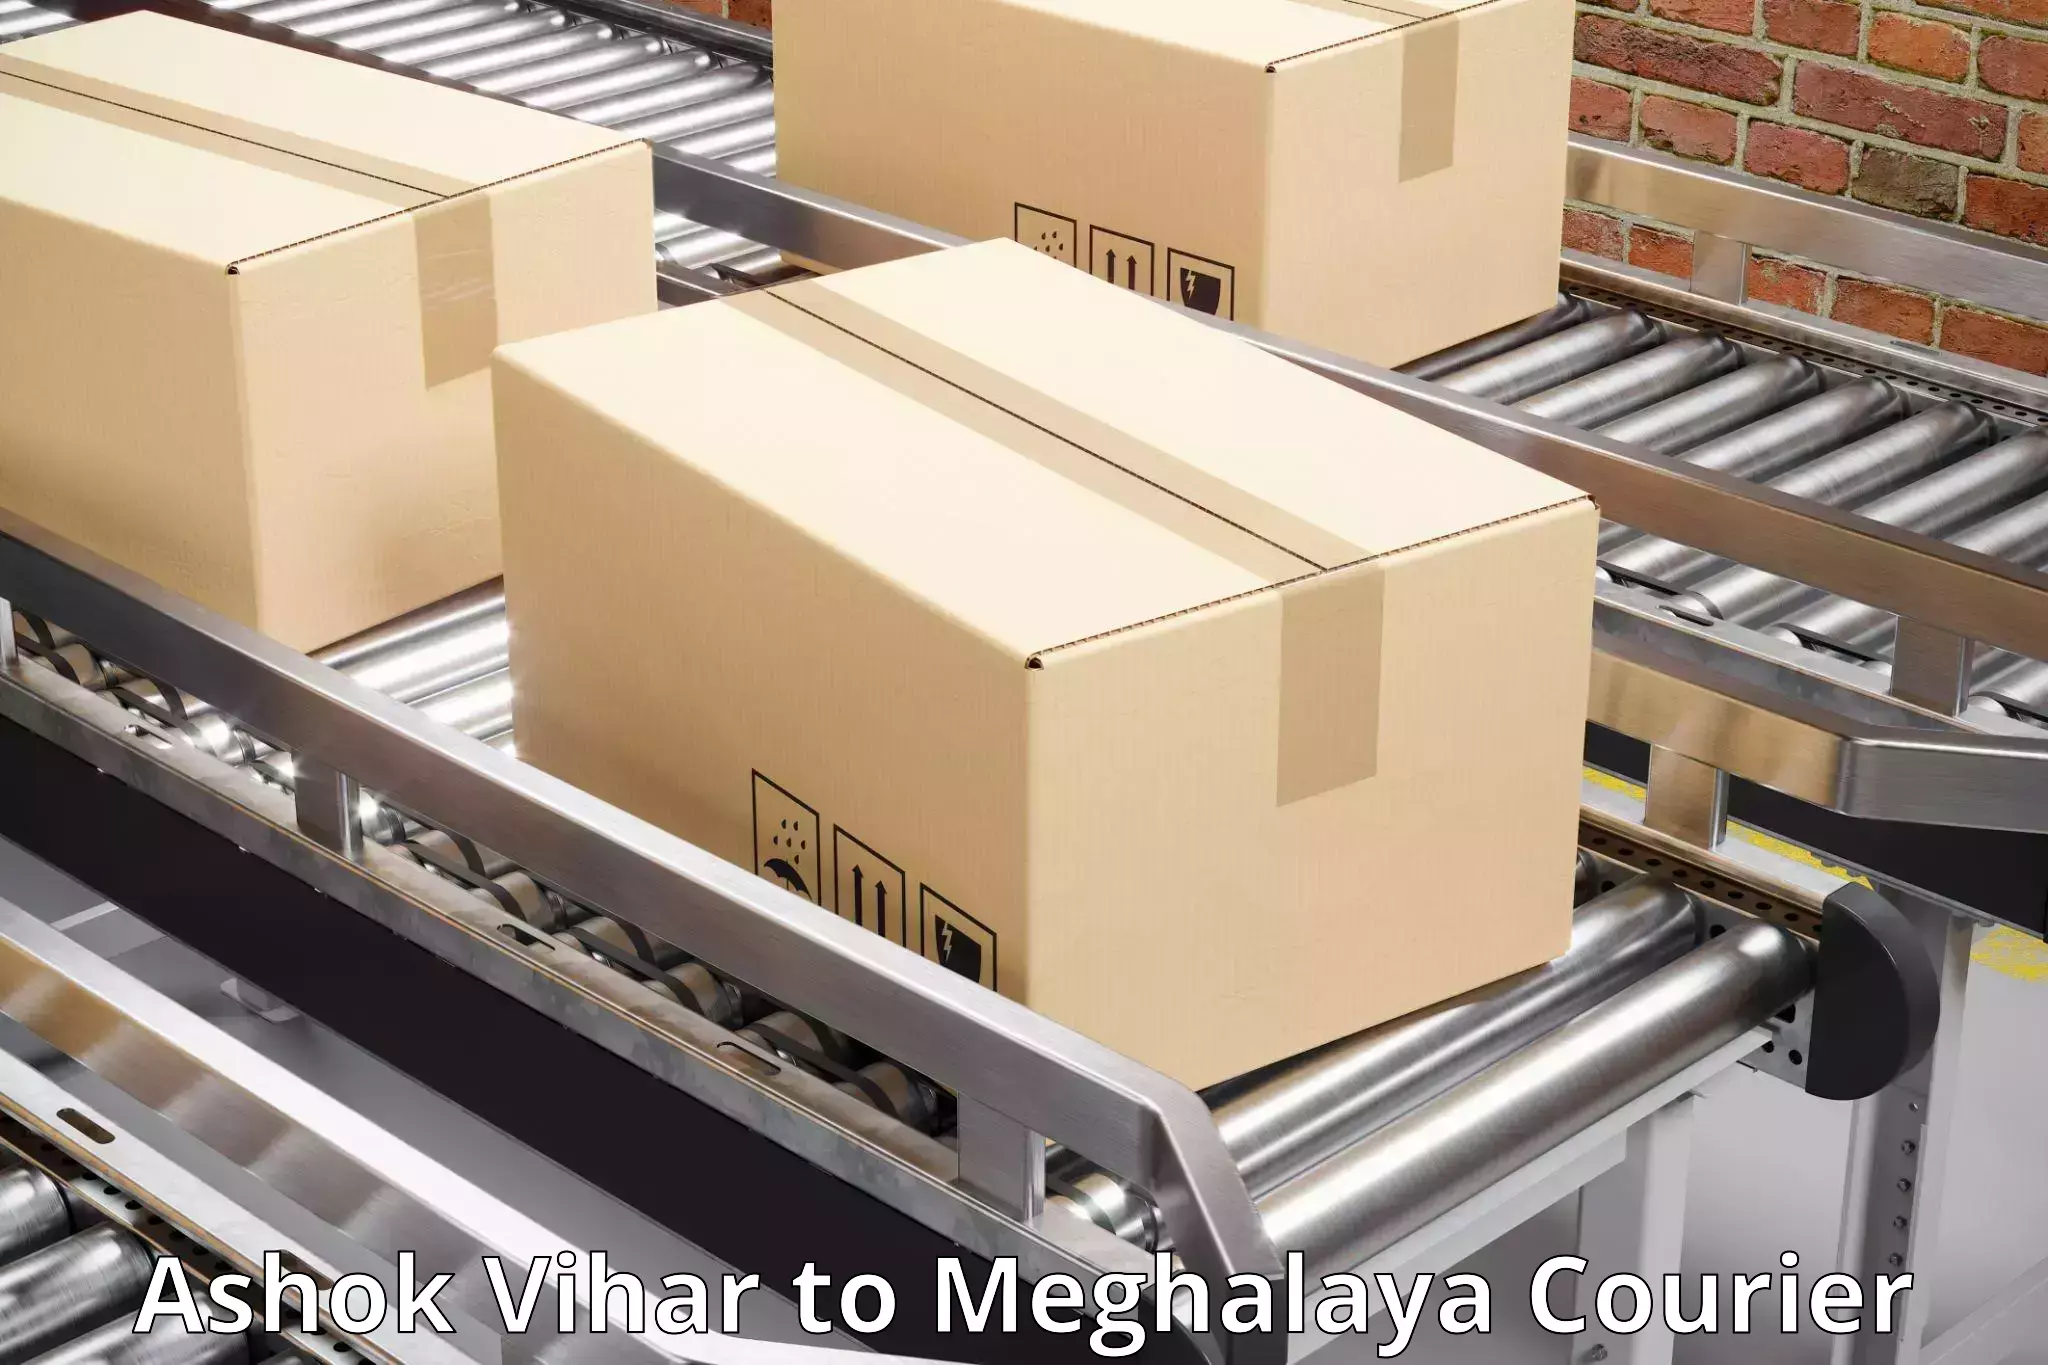 Express package handling Ashok Vihar to Meghalaya